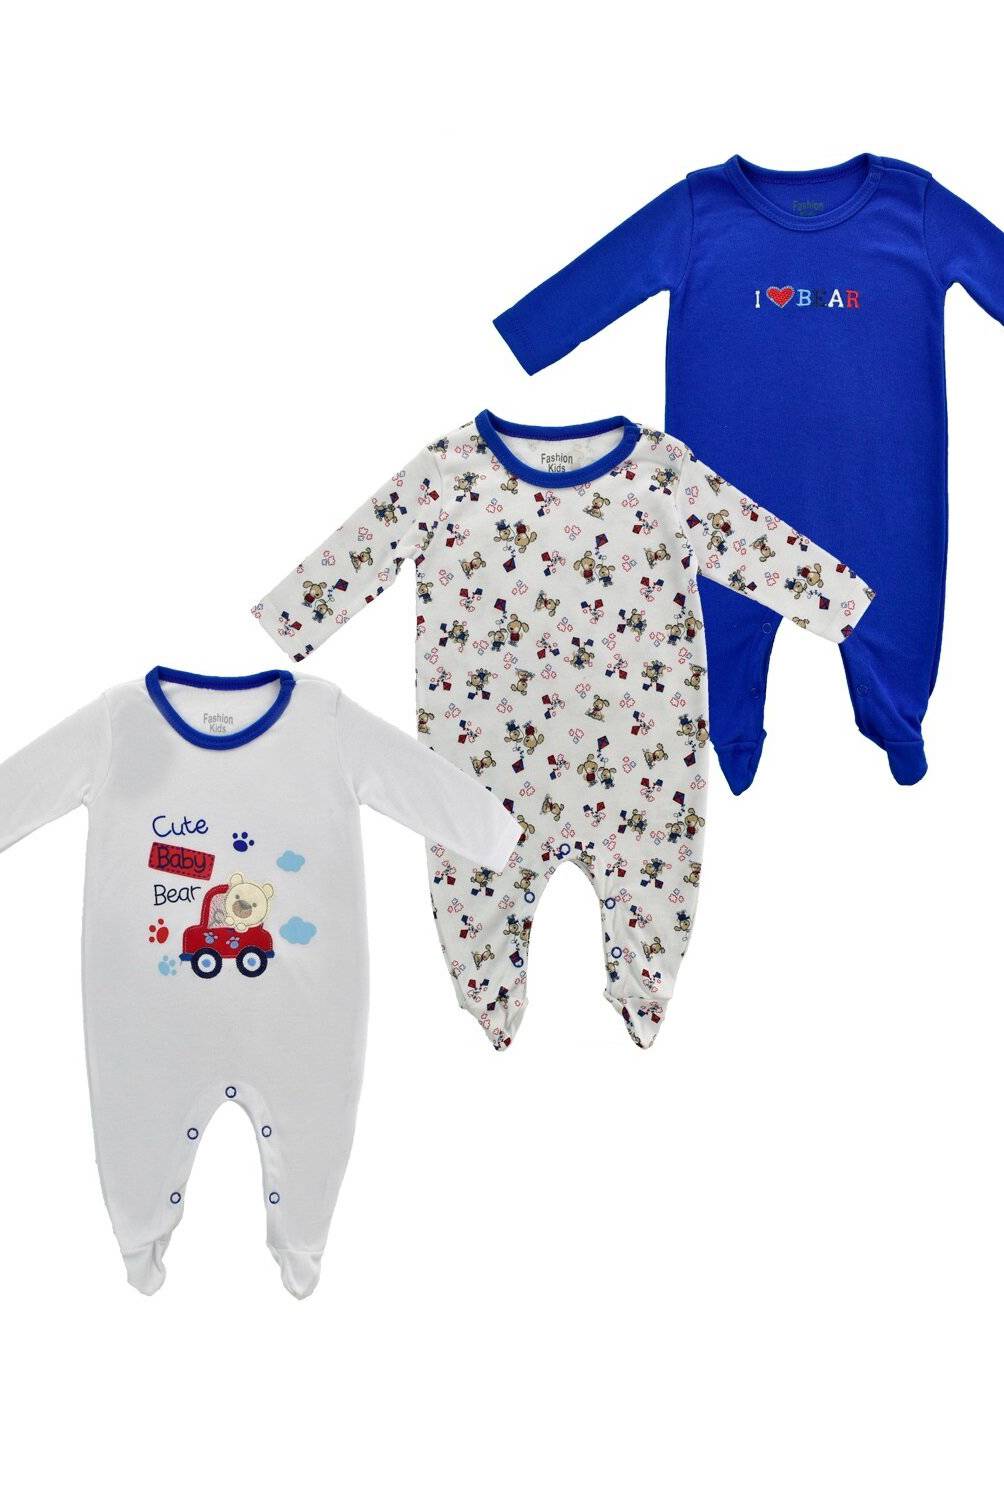 Mundo Bebé - Pijamas Bebé Niño Set X 3